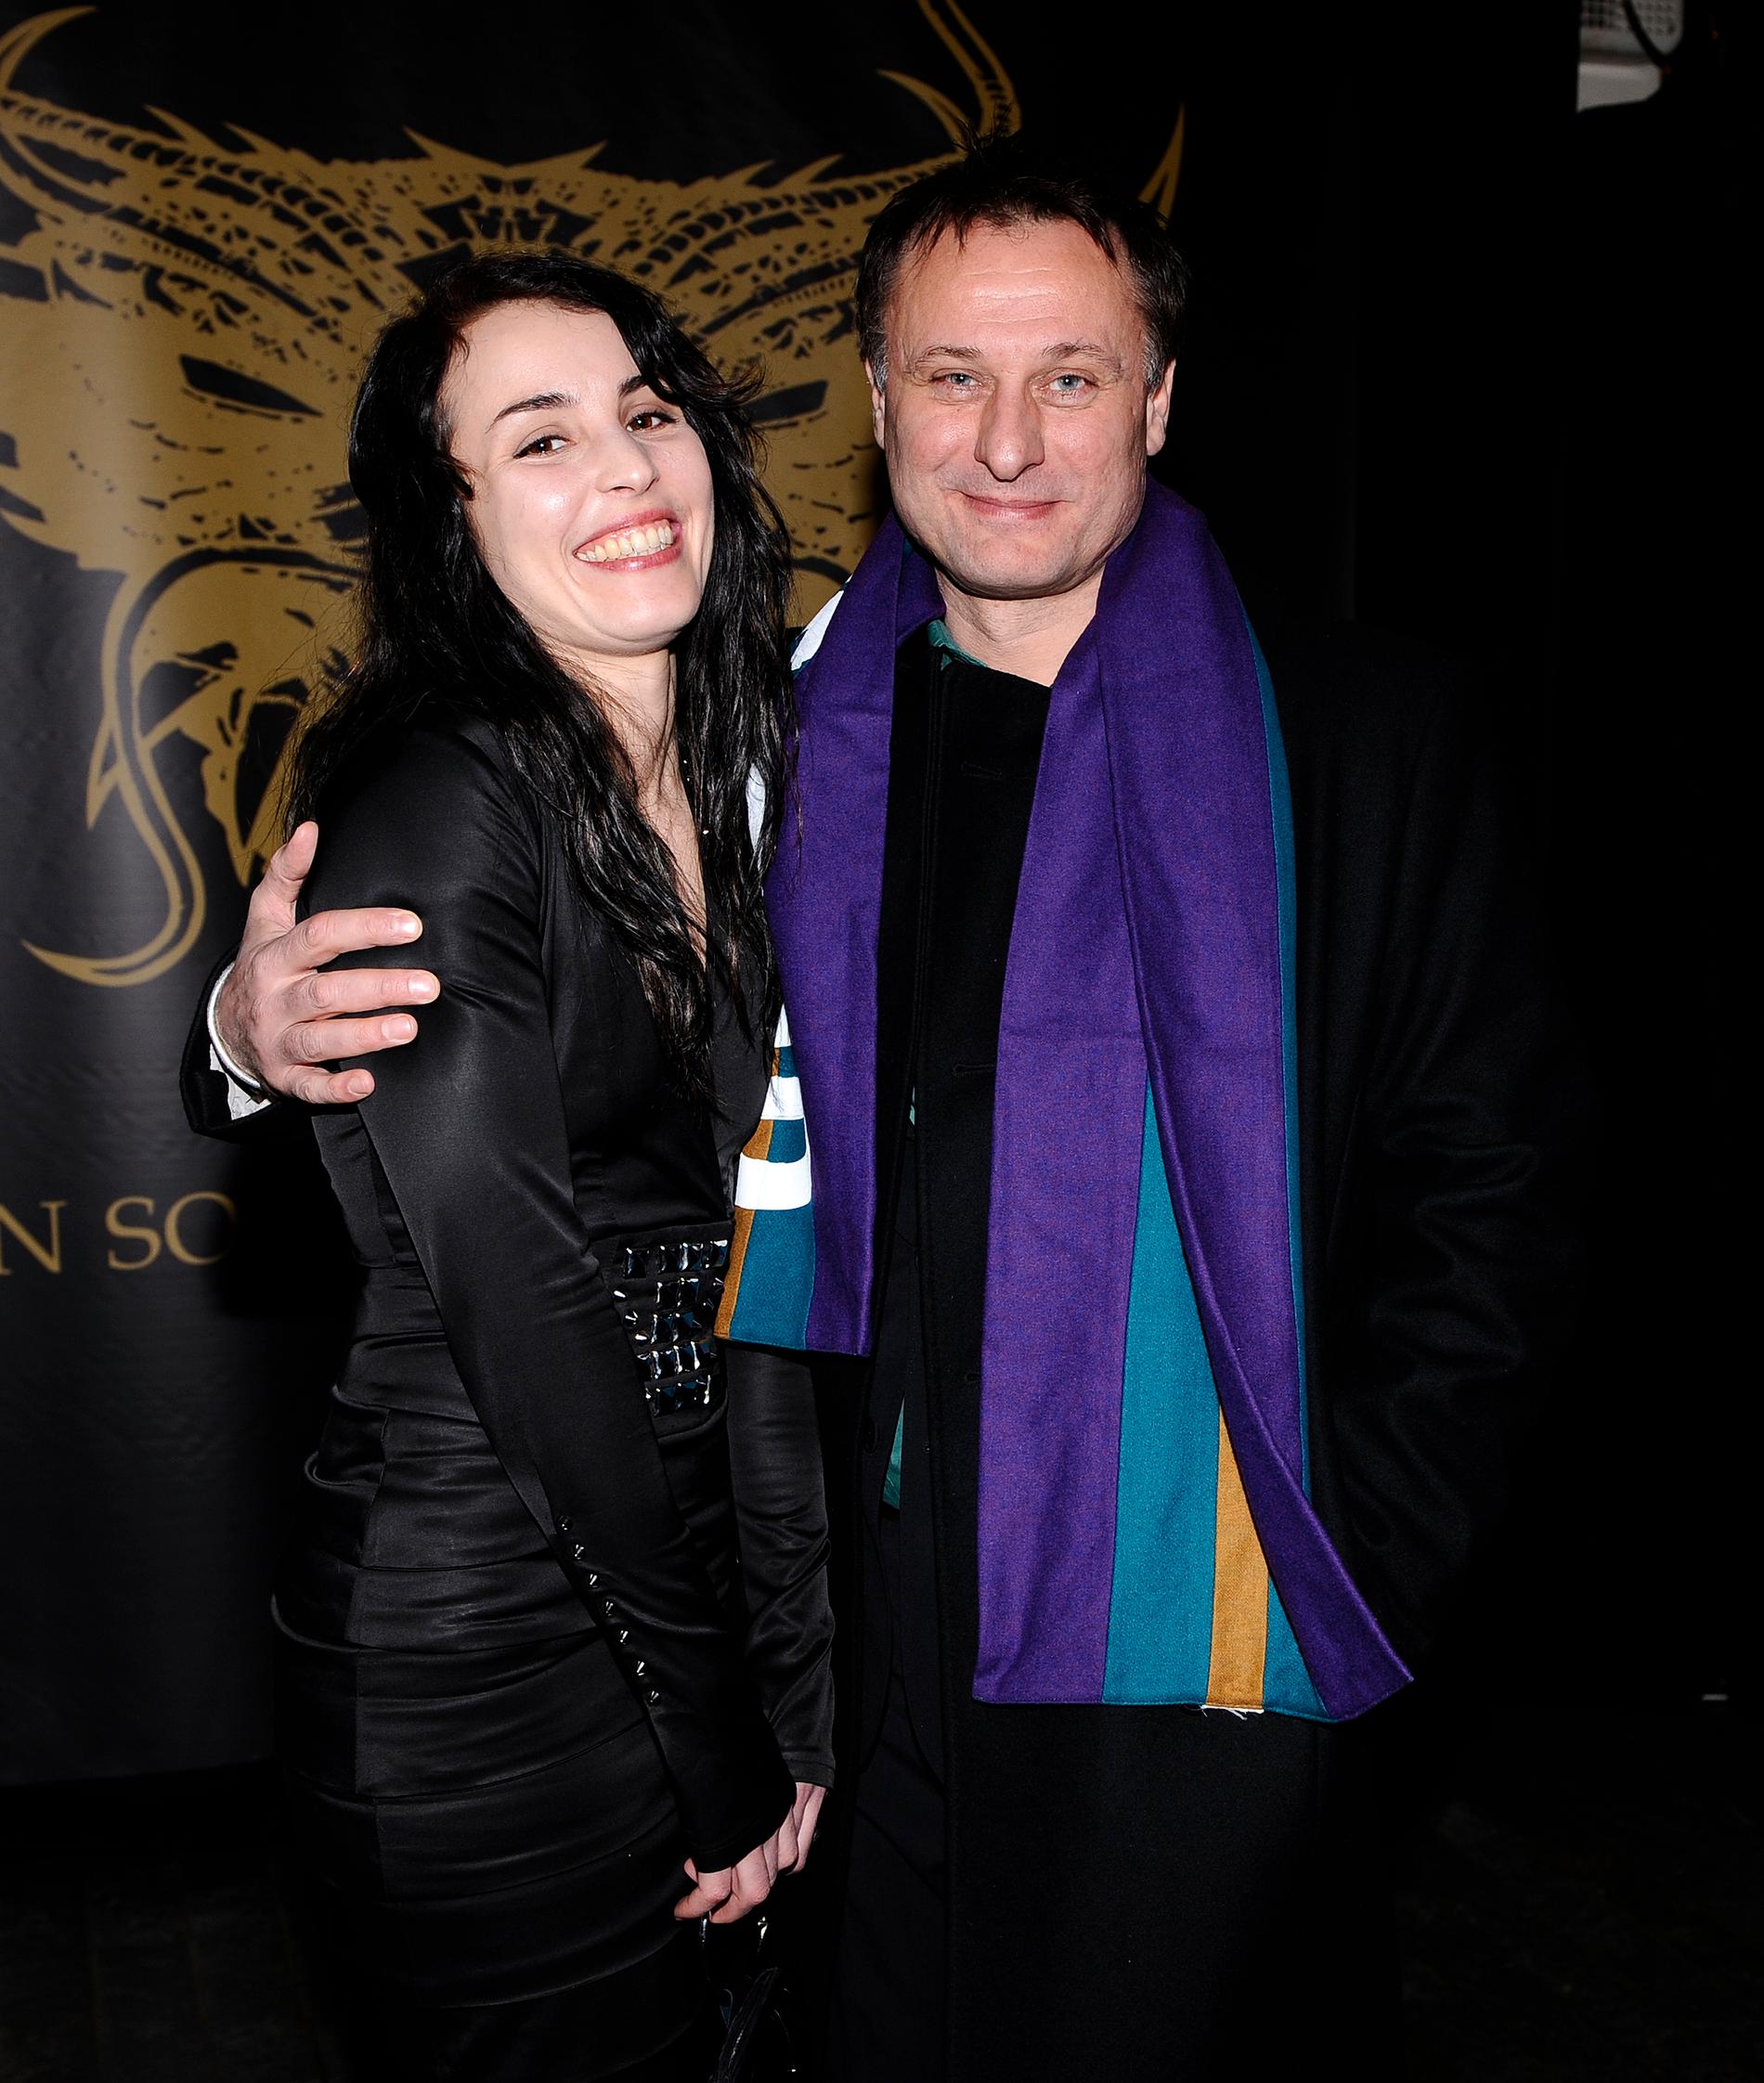 Noomi Rapace och Michael Nyqvist på premiären av ”Män som hatar kvinnor” i februari 2009.